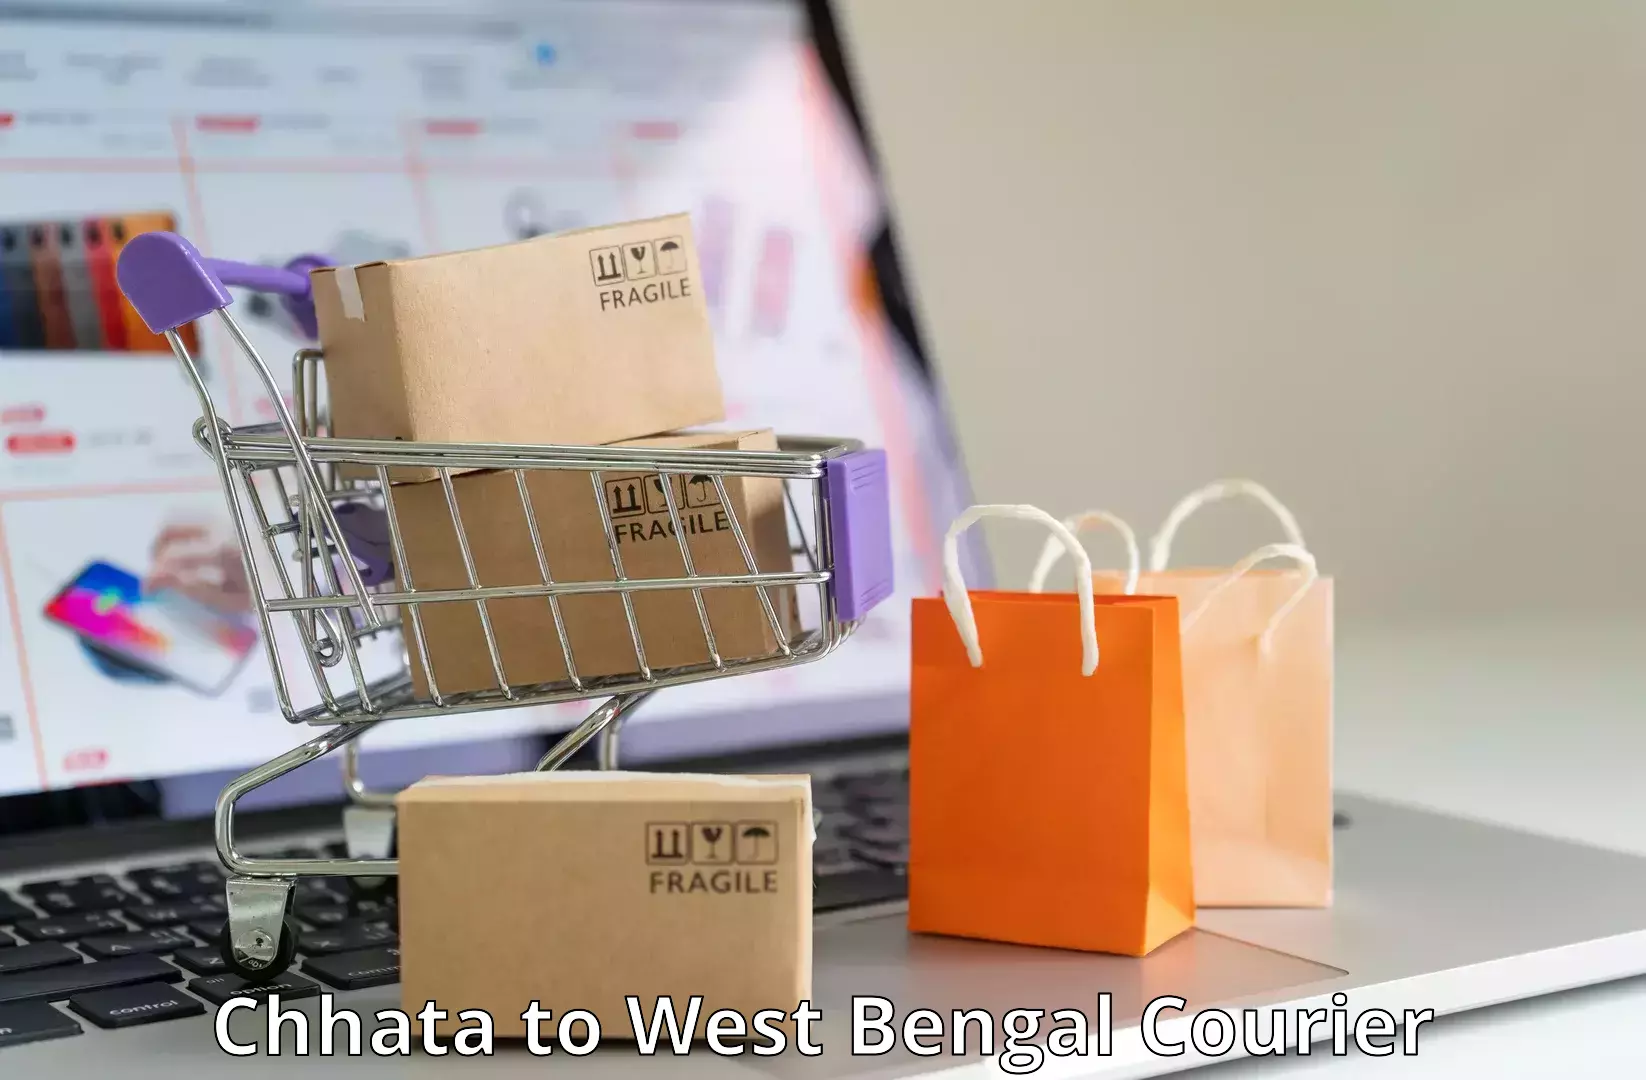 Door-to-door freight service Chhata to West Bengal